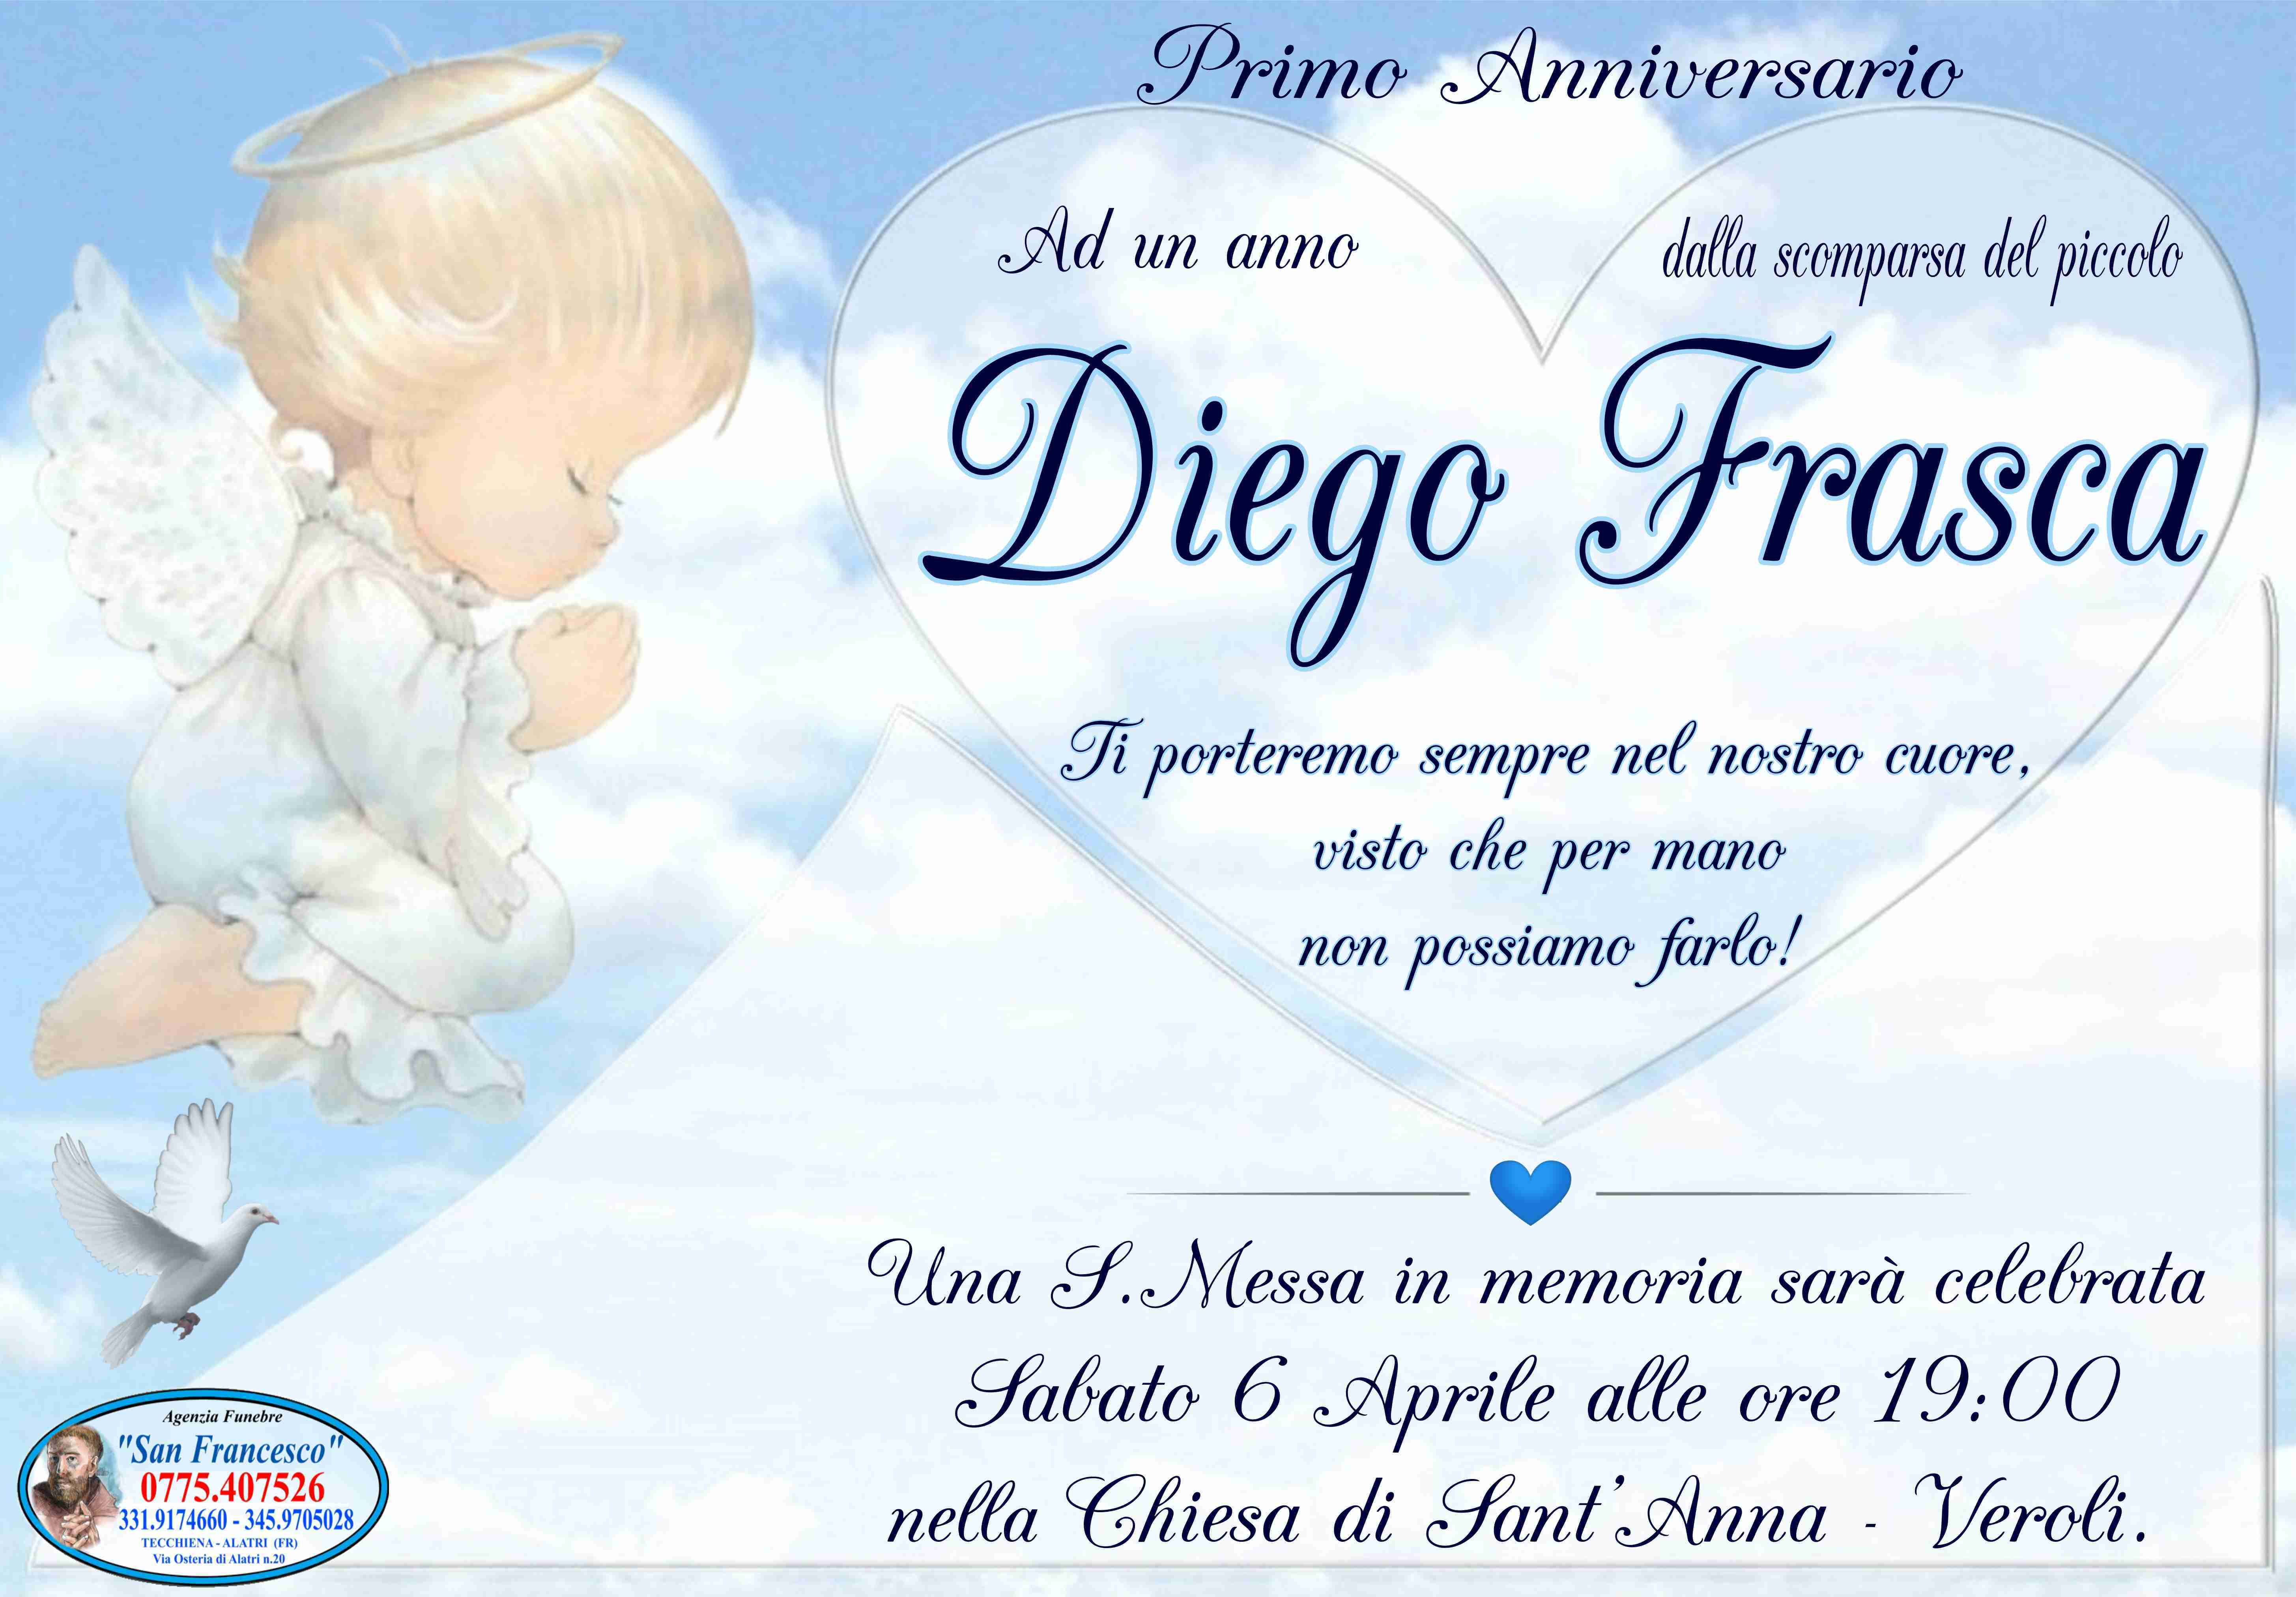 Diego Frasca